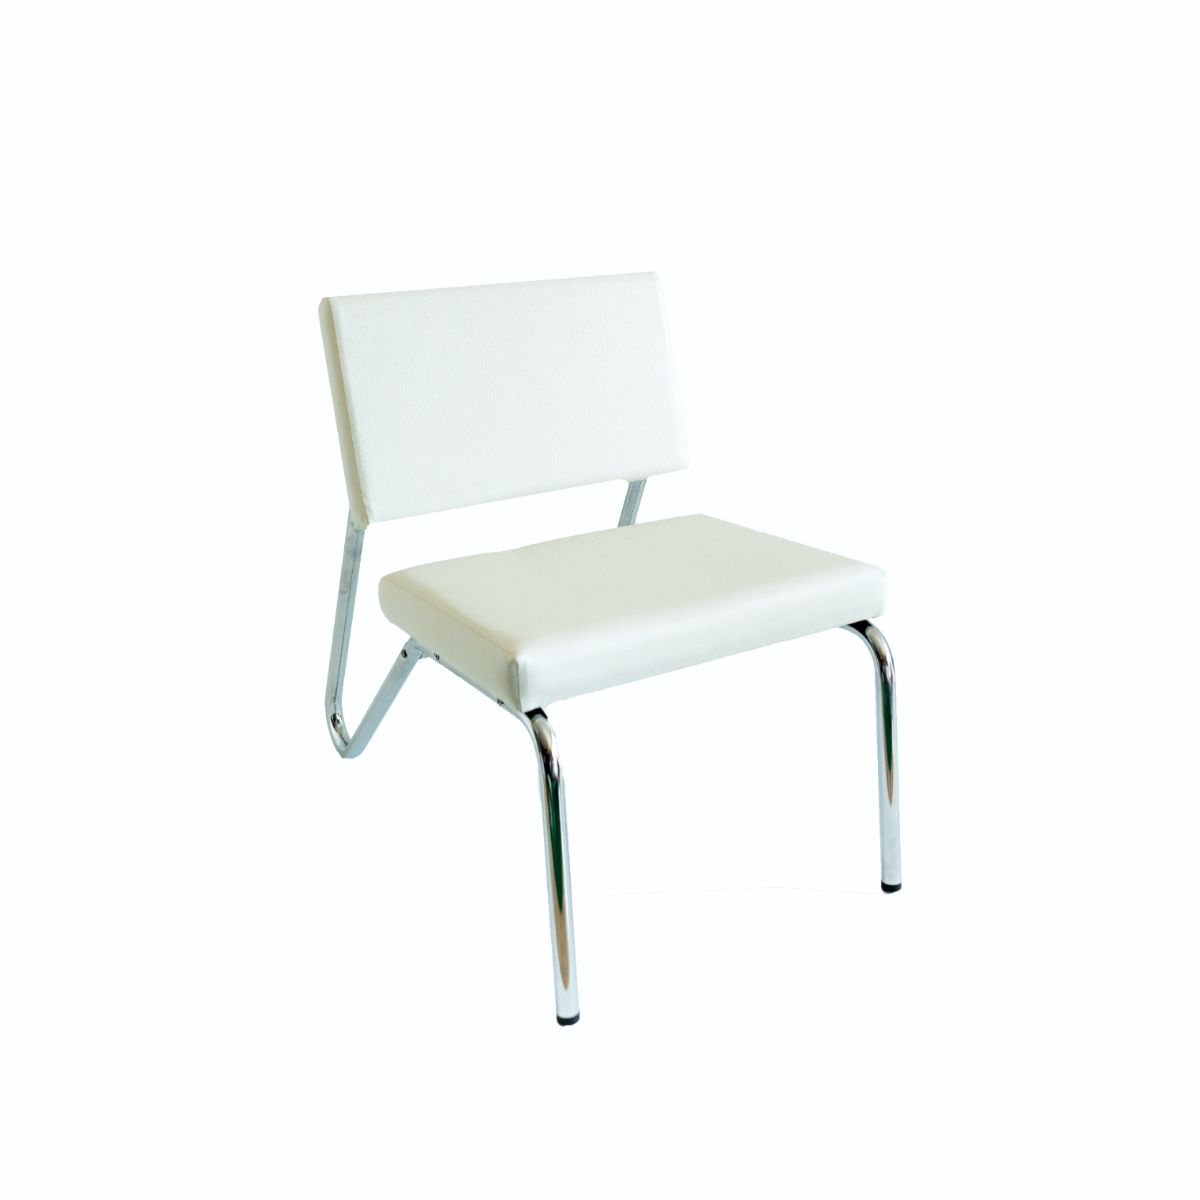  White Cushion Chair 